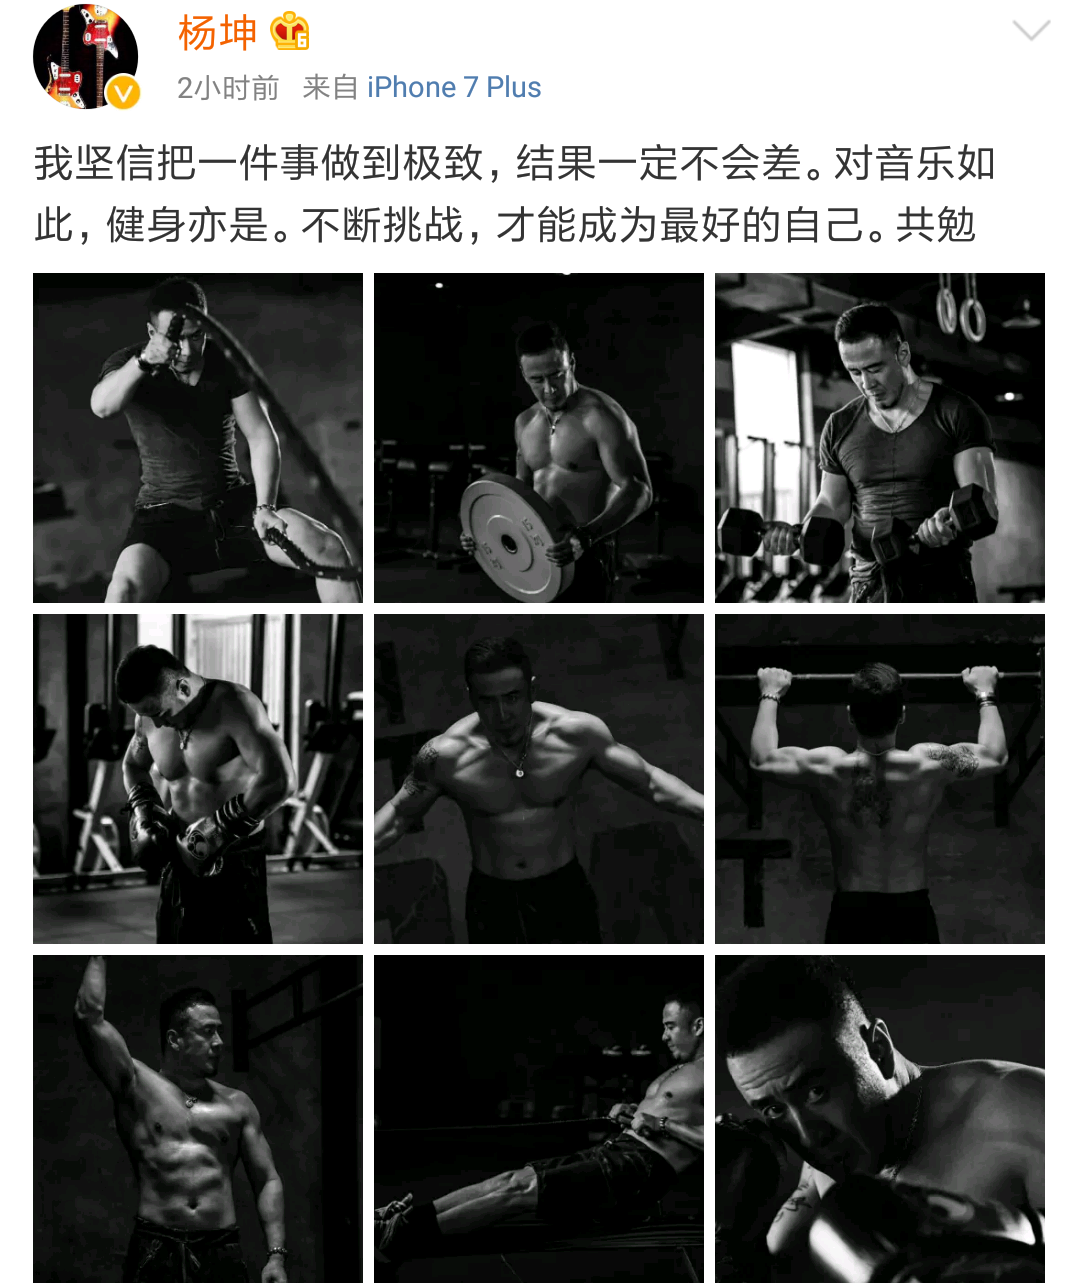 Screenshot_2017-11-21-15-06-55-485_com.sina.weibo.png